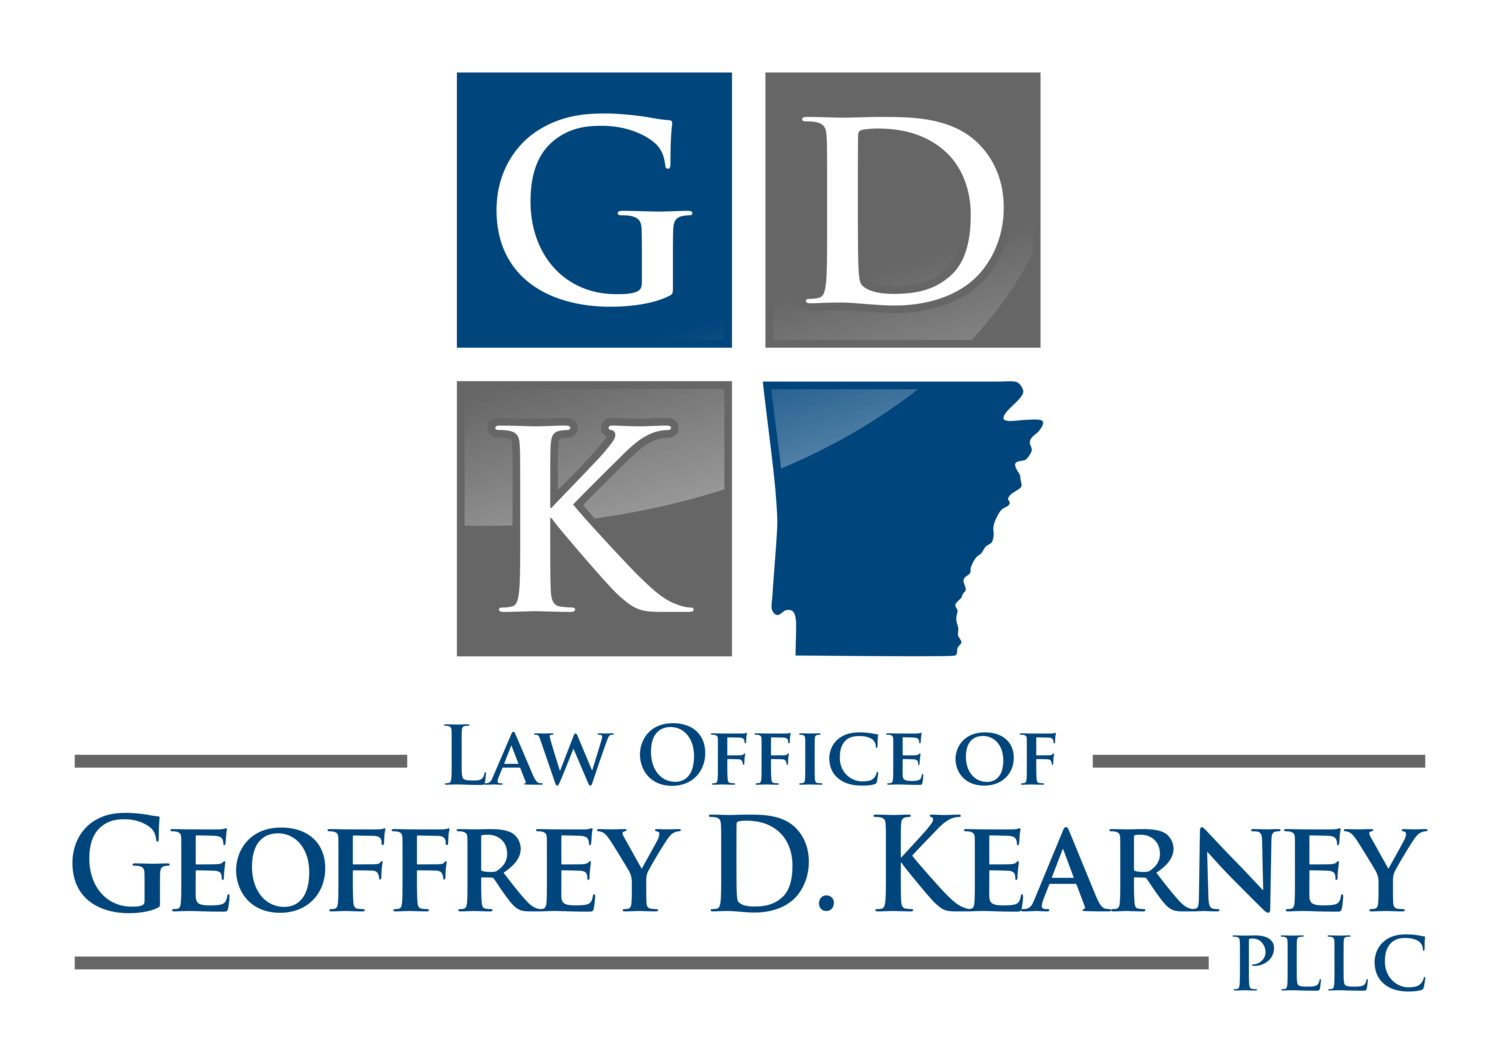 The Law Office of Geoffrey D. Kearney, PLLC